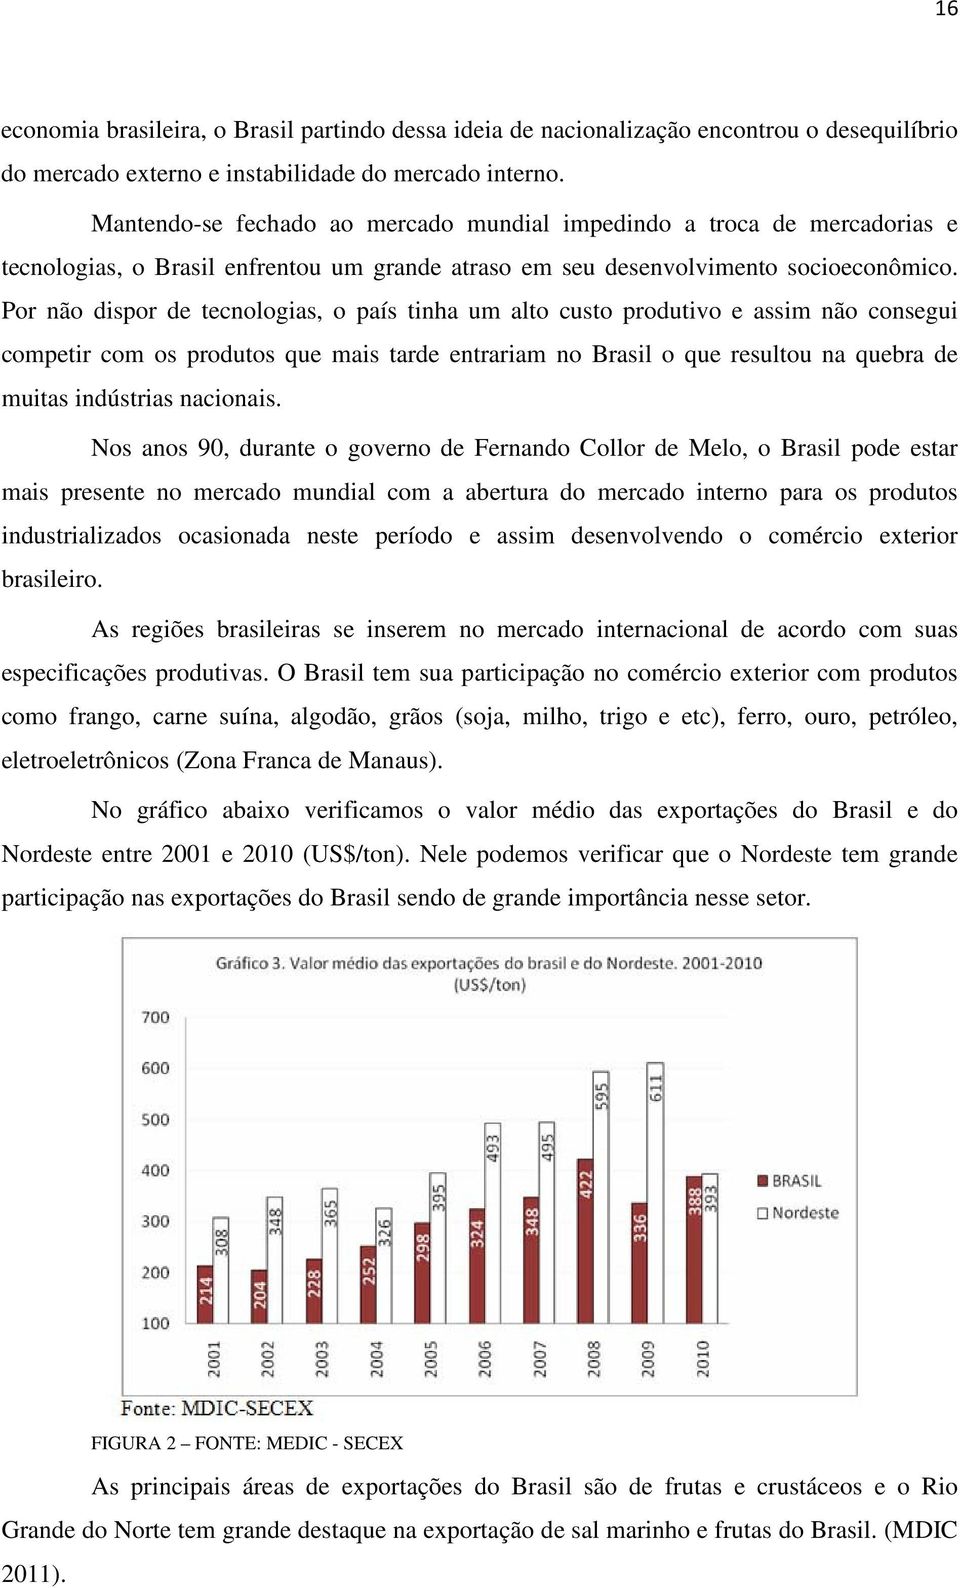 Por não dispor de tecnologias, o país tinha um alto custo produtivo e assim não consegui competir com os produtos que mais tarde entrariam no Brasil o que resultou na quebra de muitas indústrias